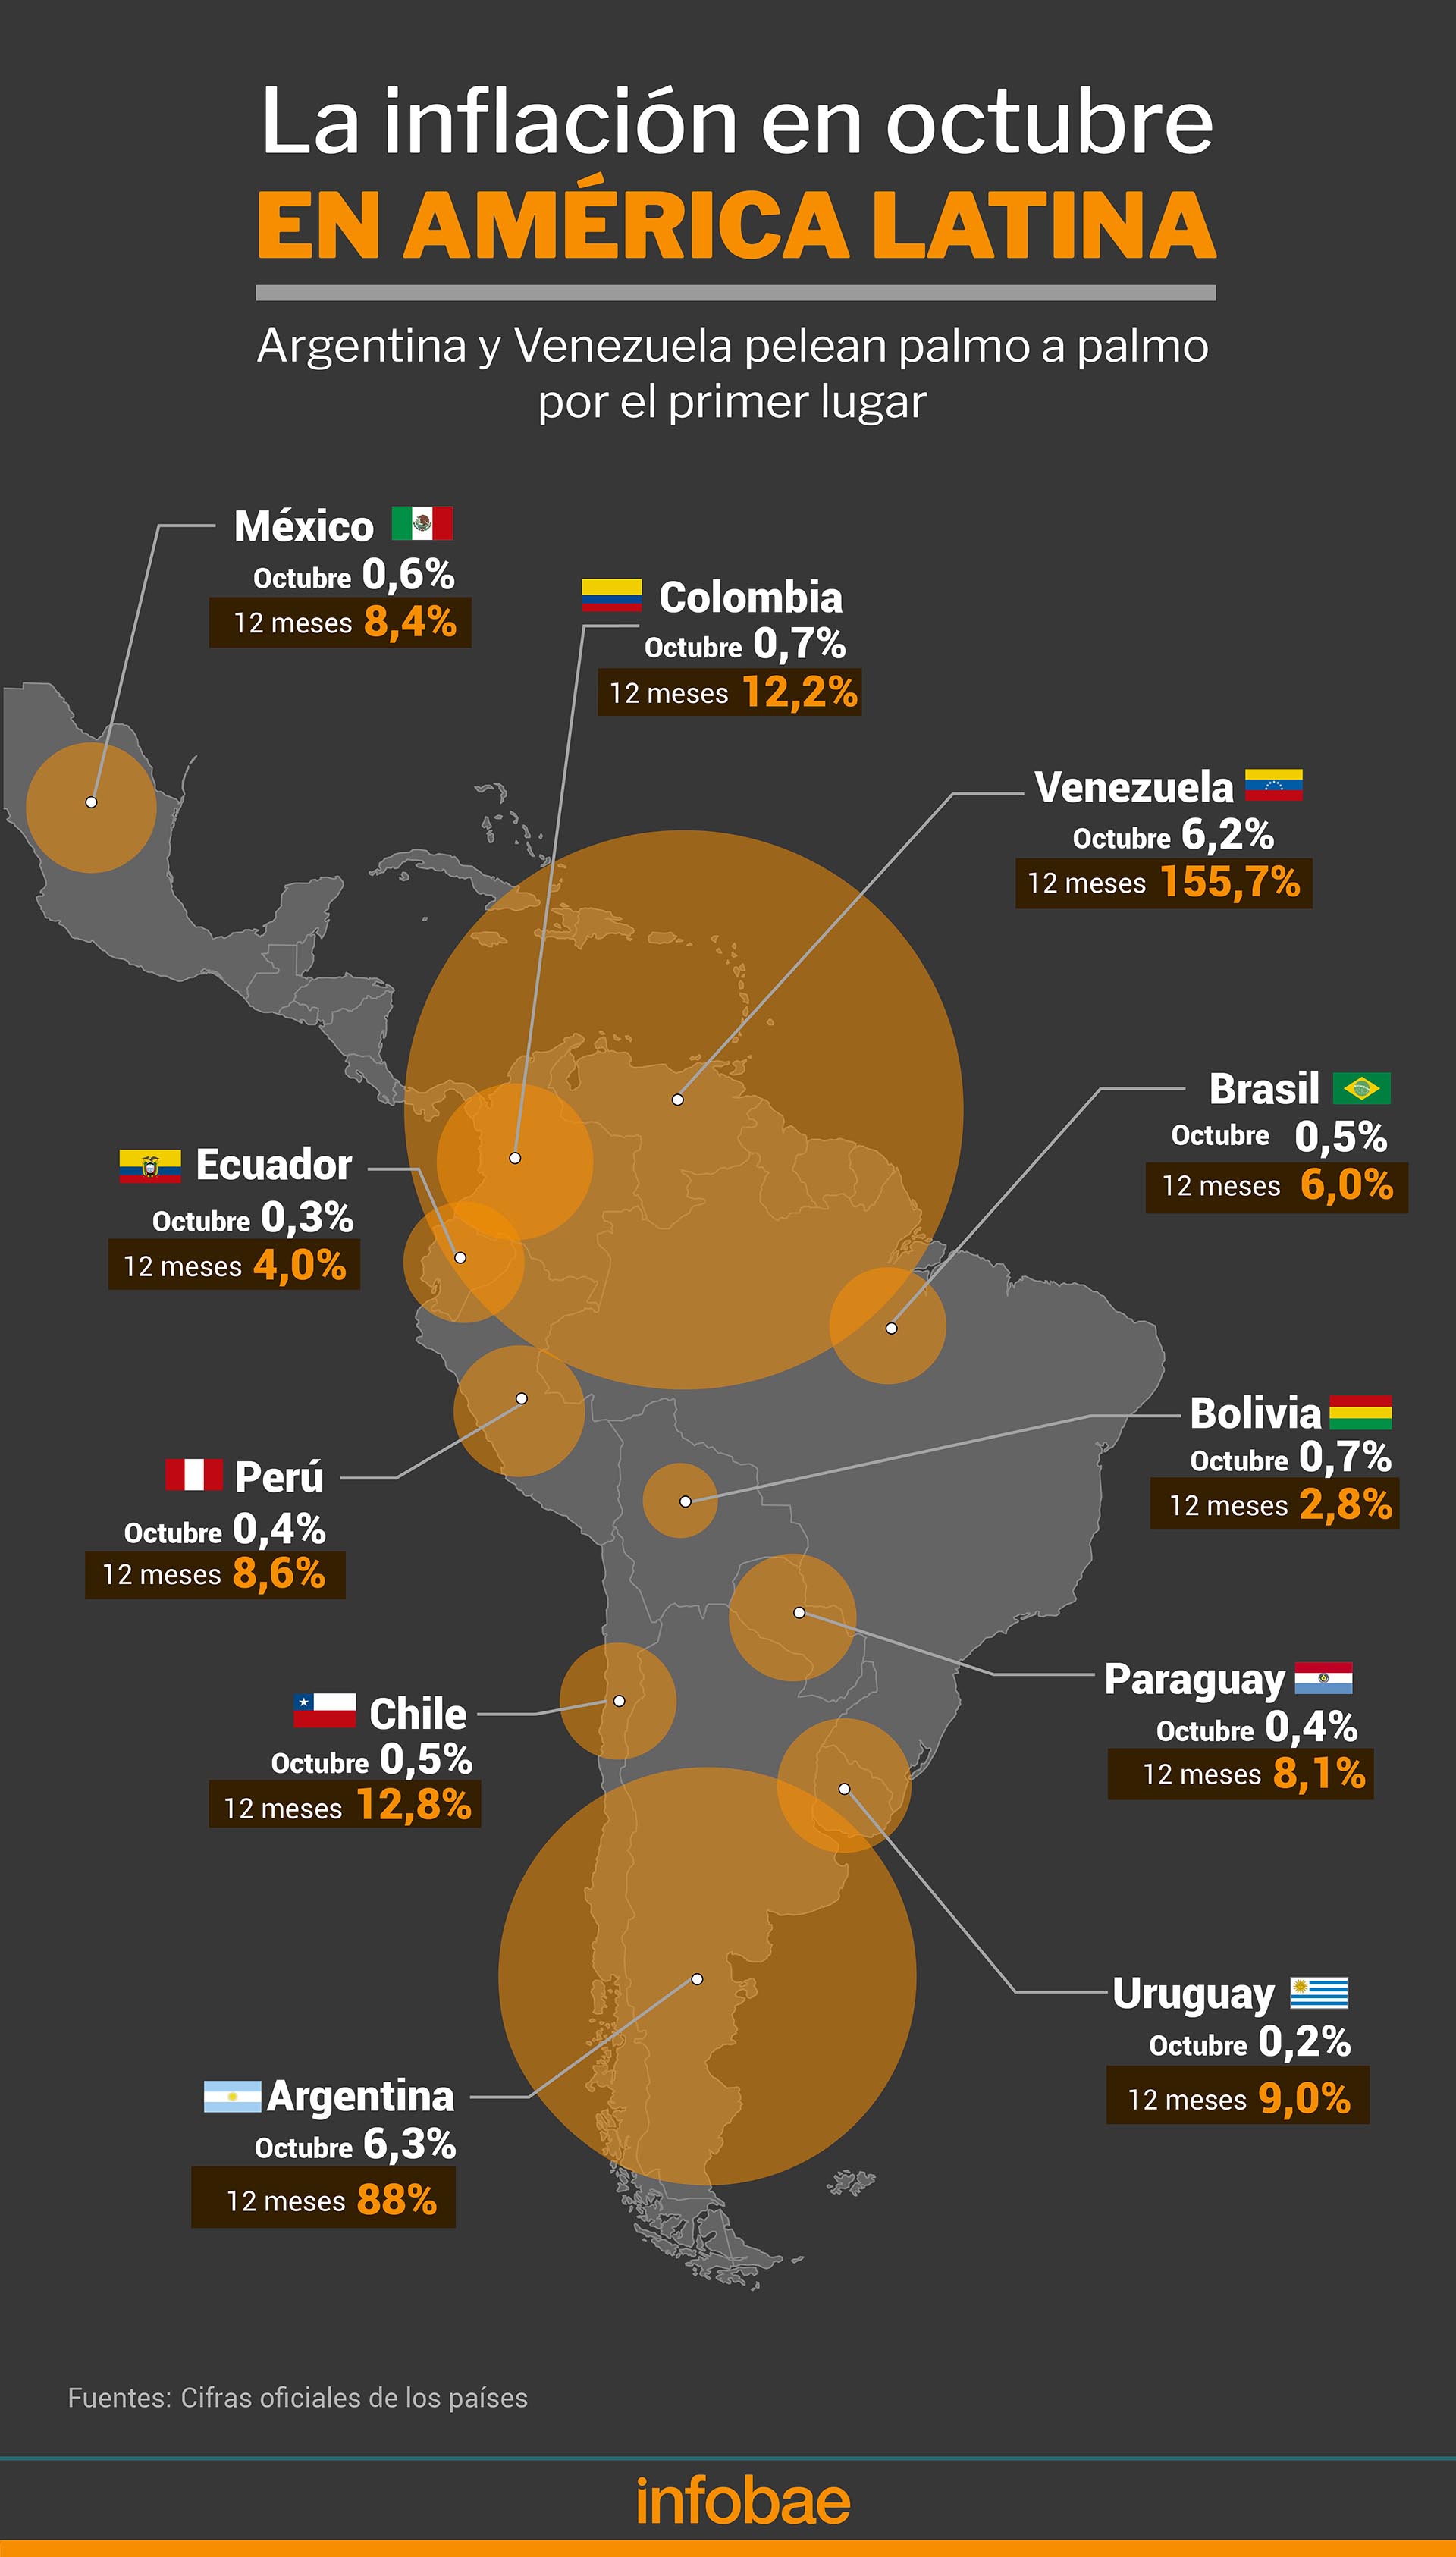 La inflación en octubre en America latina
Infografía de Marcelo Regalado